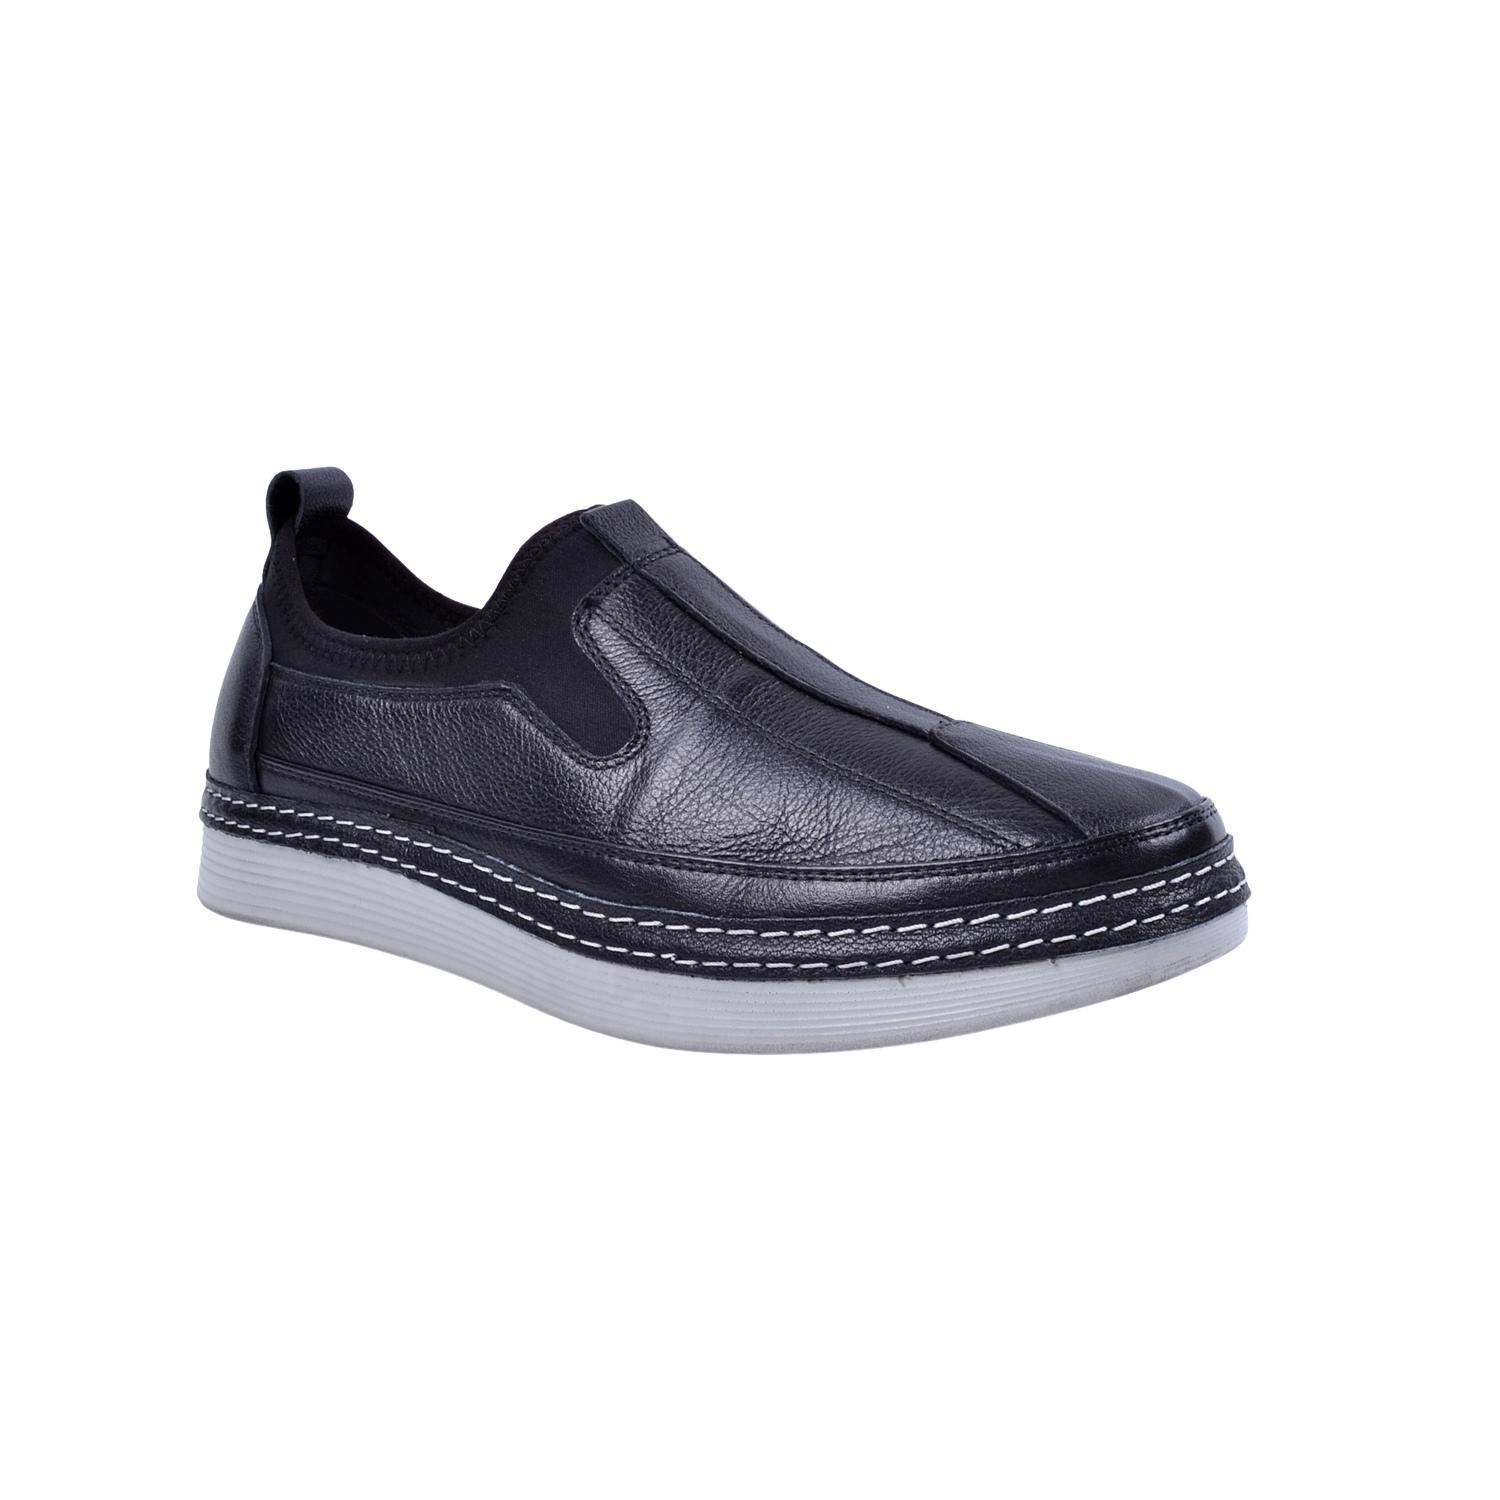 İskarpin 1020 Siyah Erkek Deri Ayakkabı